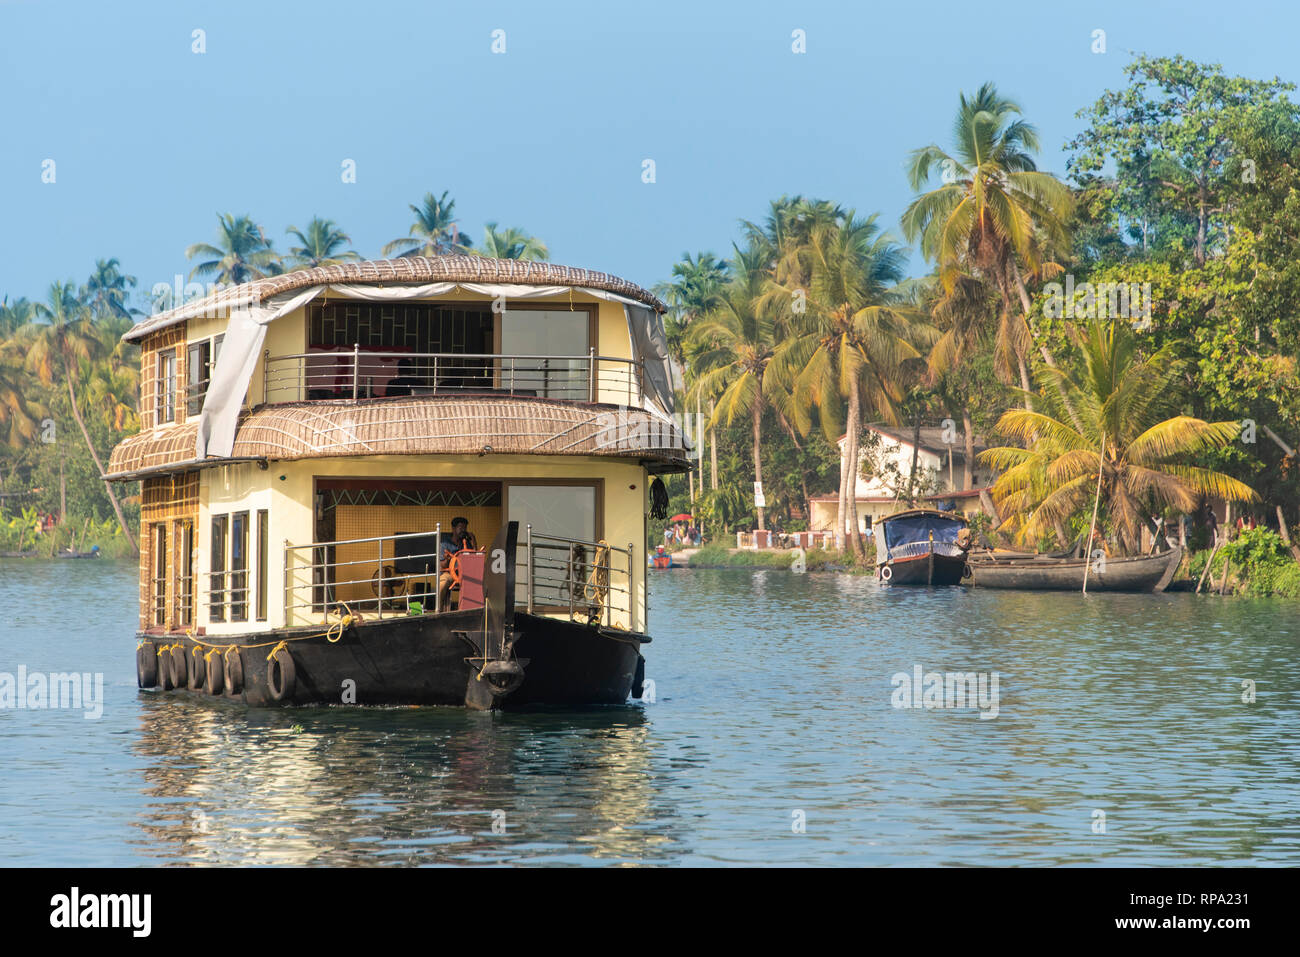 Un exemple typique d'une journée de croisière en bateau traditionnel flottant sur l'eau dormante Keralan lors d'une journée ensoleillée avec ciel bleu et de palmiers. Banque D'Images